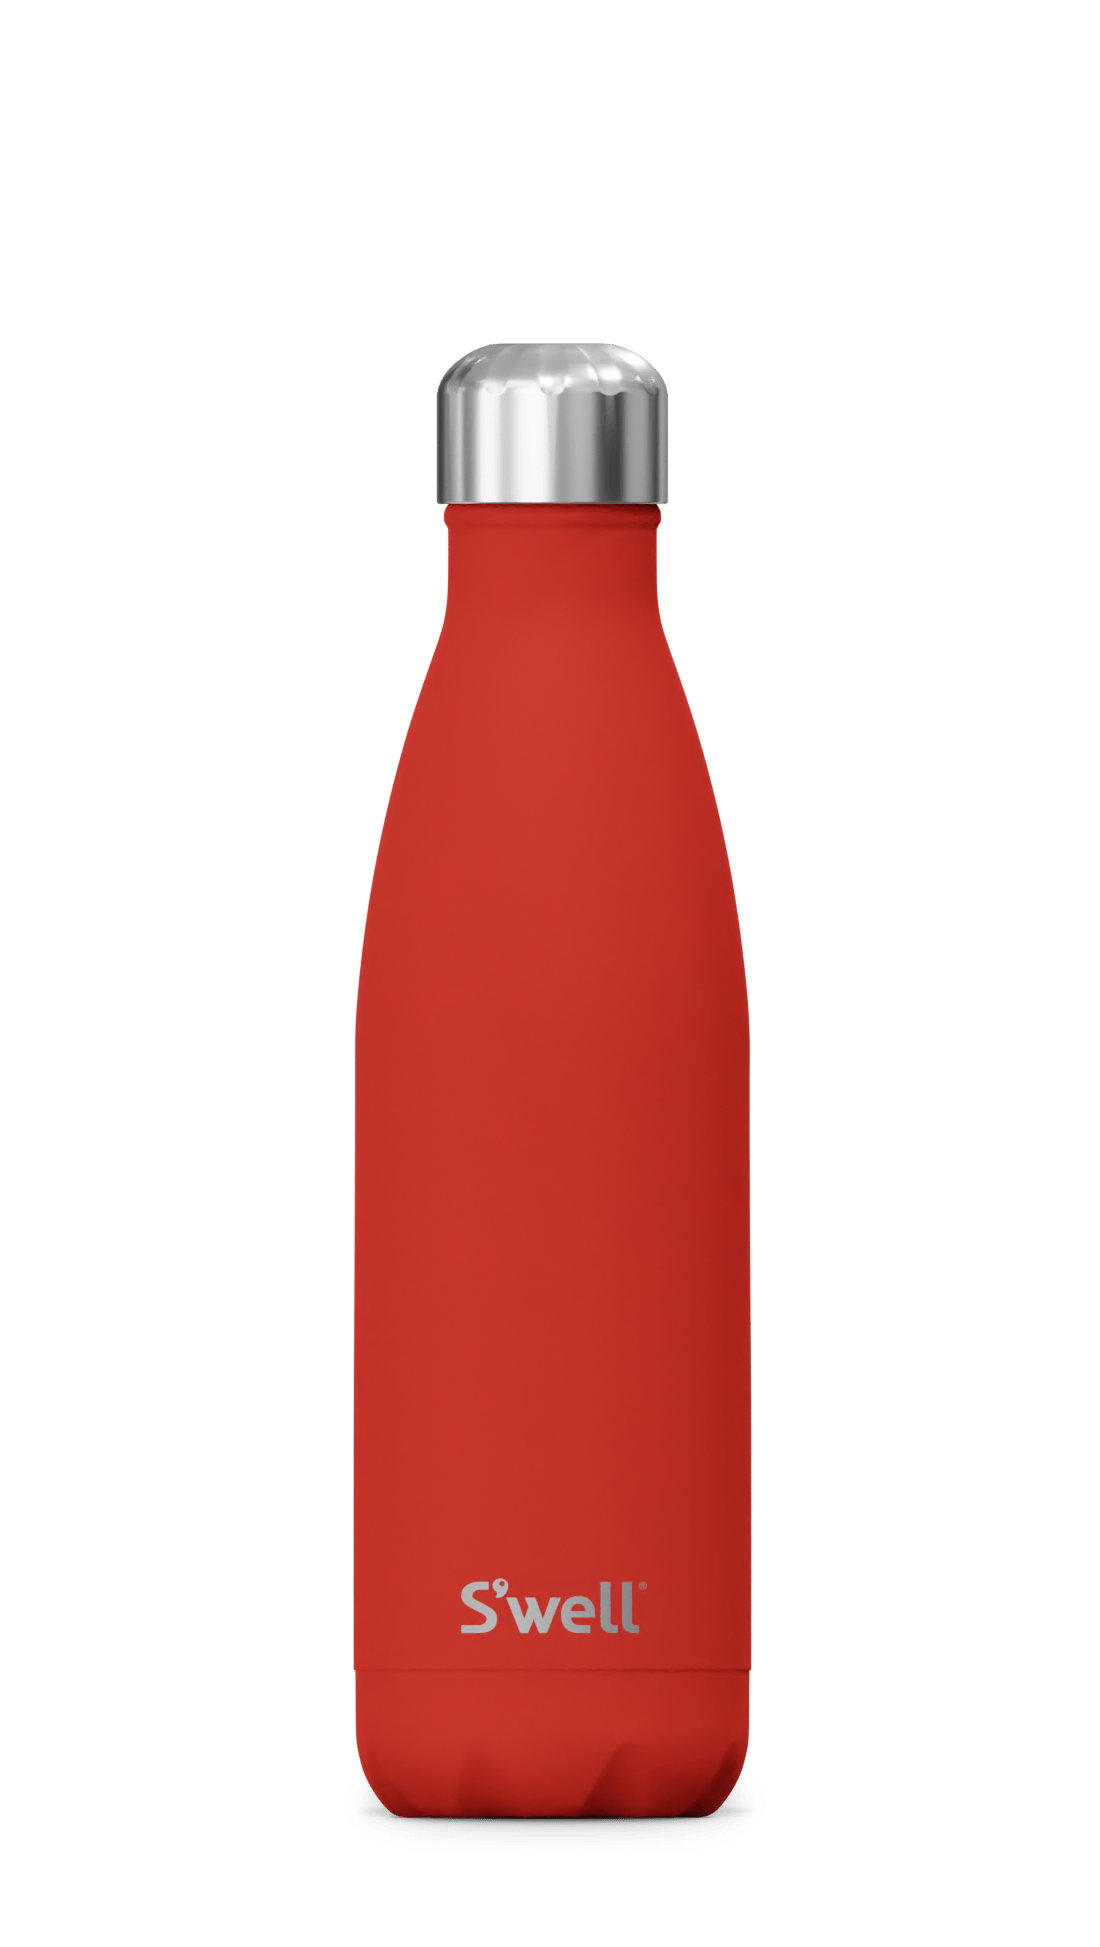 Poppy Red Bottle – S'well